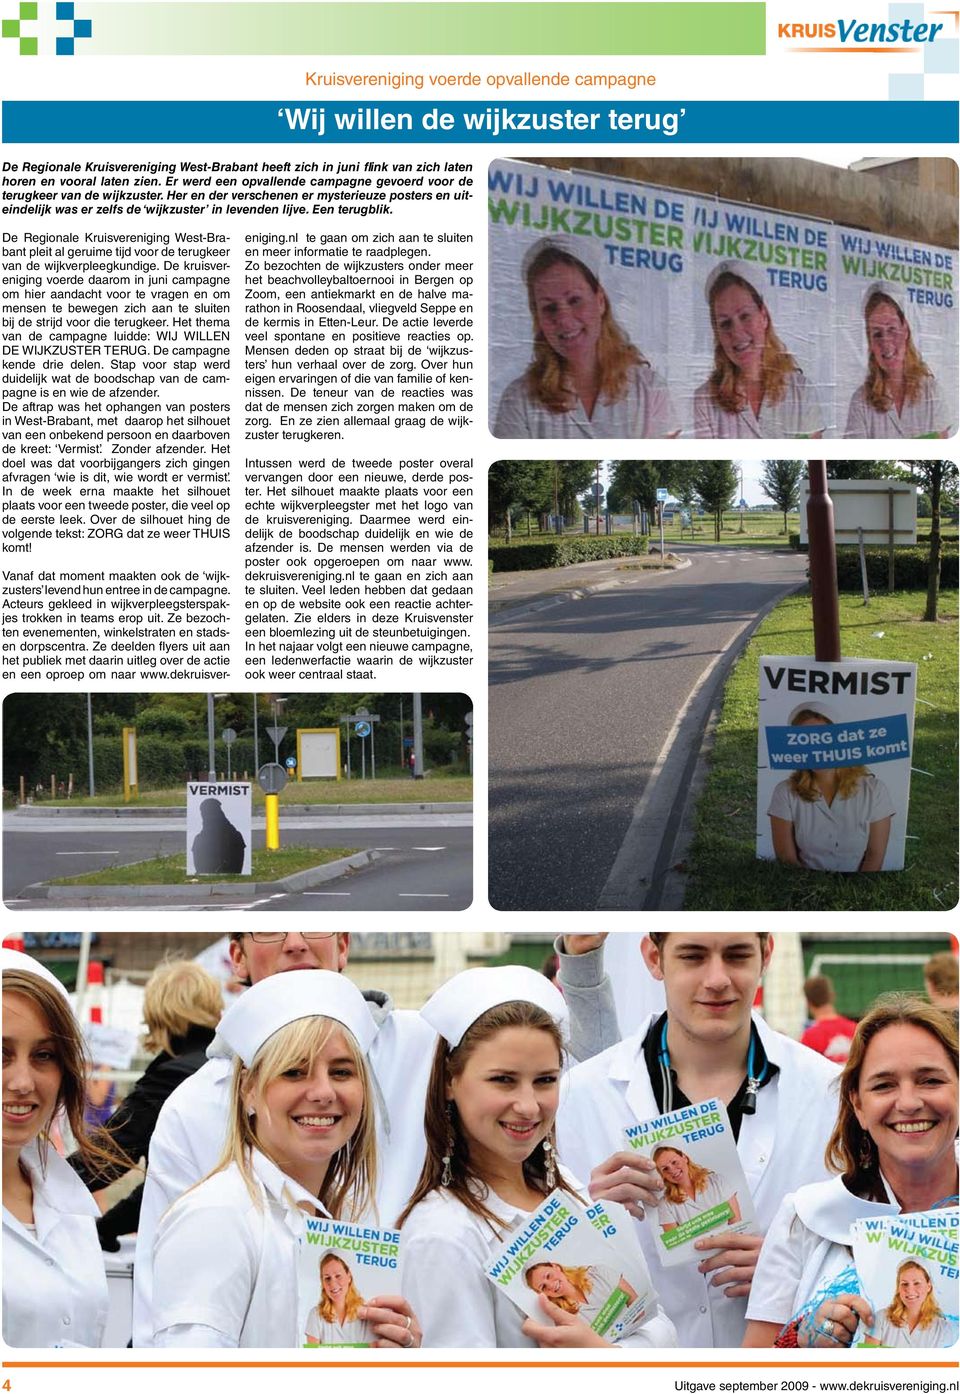 De Regionale Kruisvereniging West-Brabant pleit al geruime tijd voor de terugkeer van de wijkverpleegkundige.